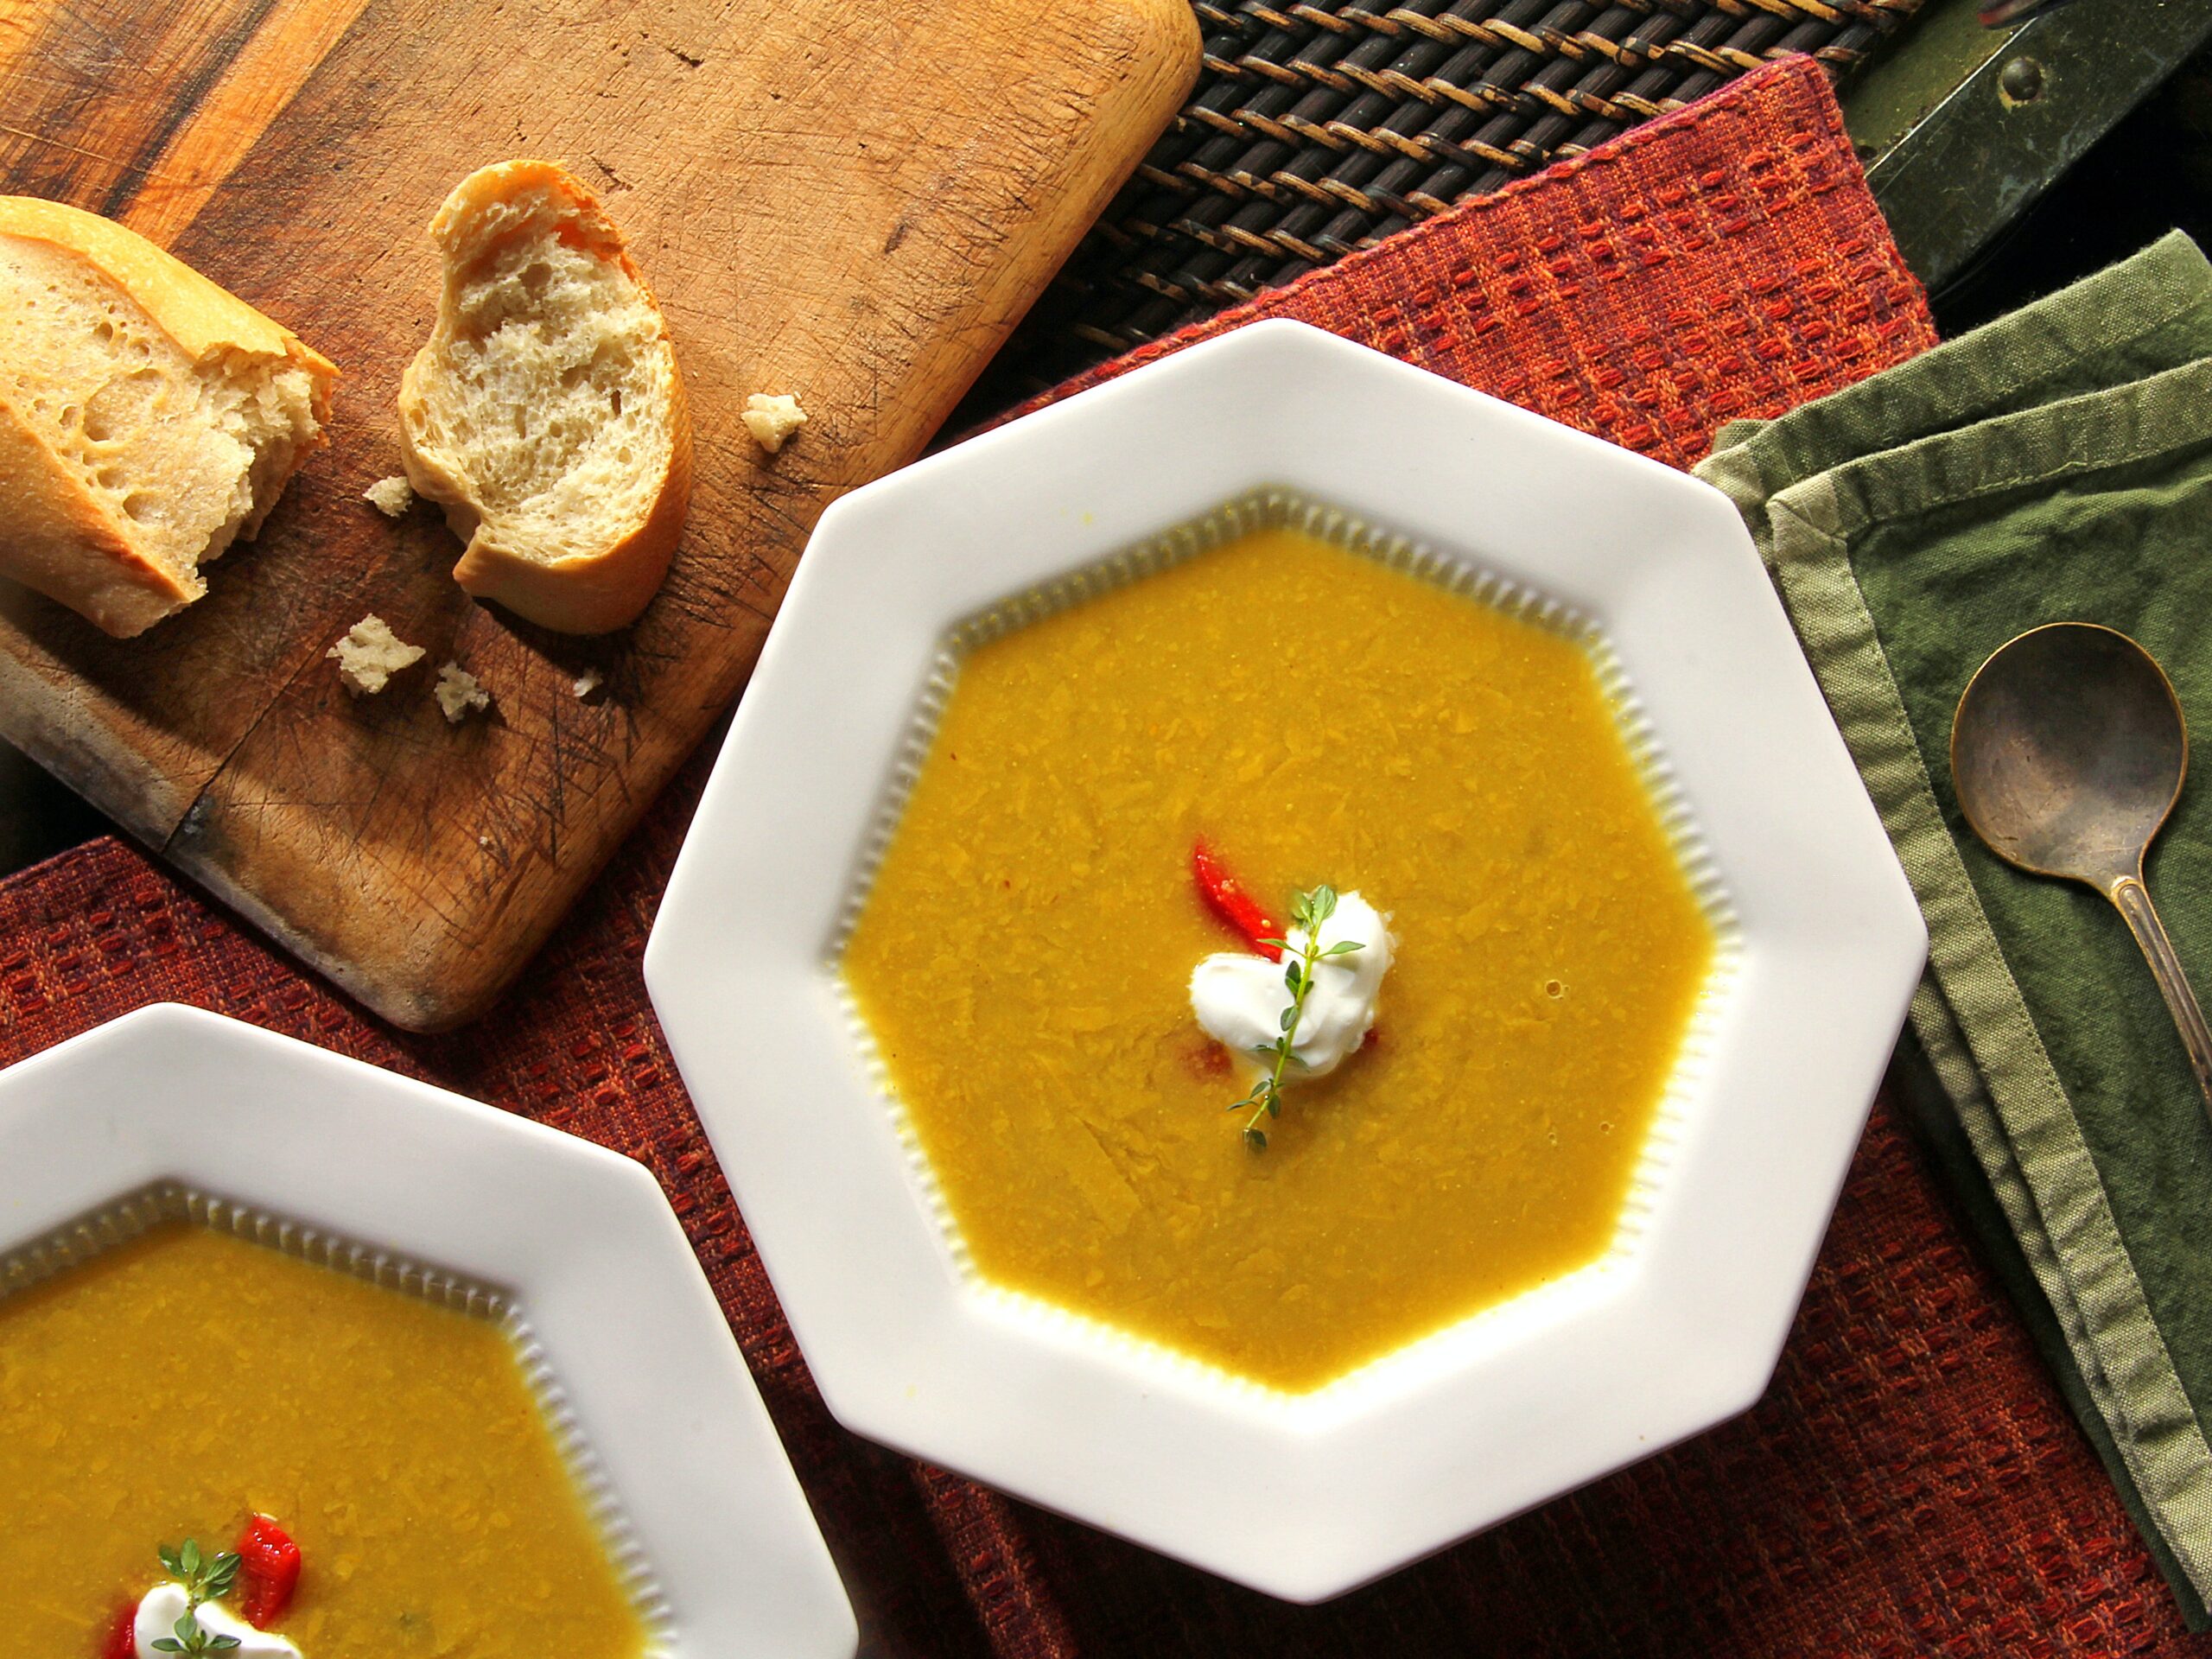 La diferencia entre sopa y caldo puede variar según la región y la cultura, pero generalmente se refiere a la consistencia y los ingredientes utilizados.